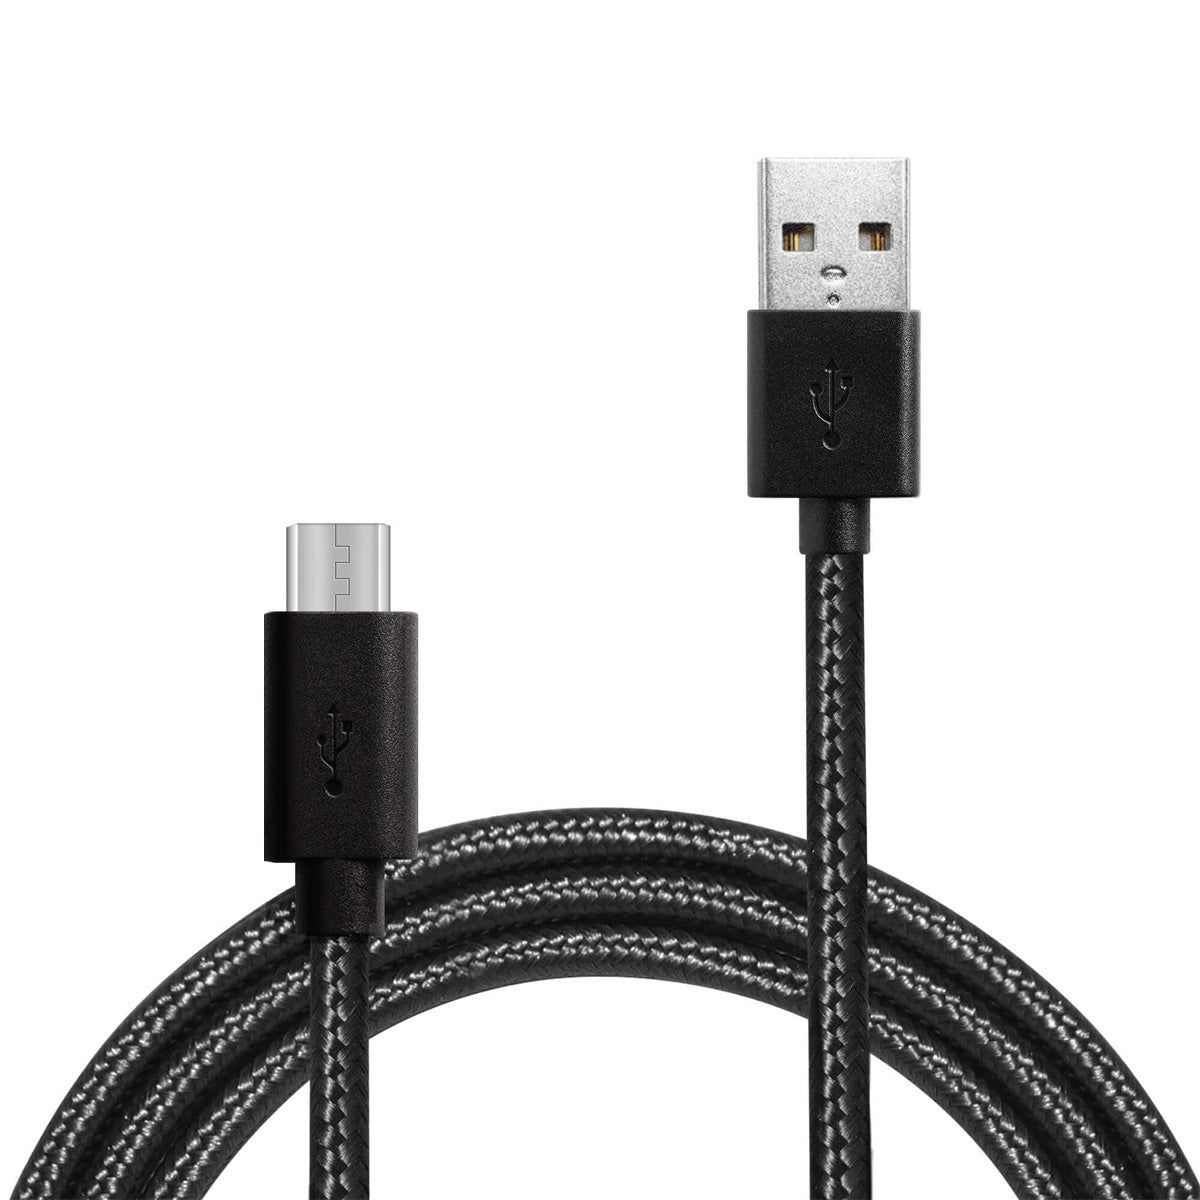 ADATA 2.4A फ़ास्ट चार्जिंग नायलॉन ब्रेडेड माइक्रो-USB सिंक और चार्ज केबल रिवर्सिबल डिज़ाइन के साथ - काला